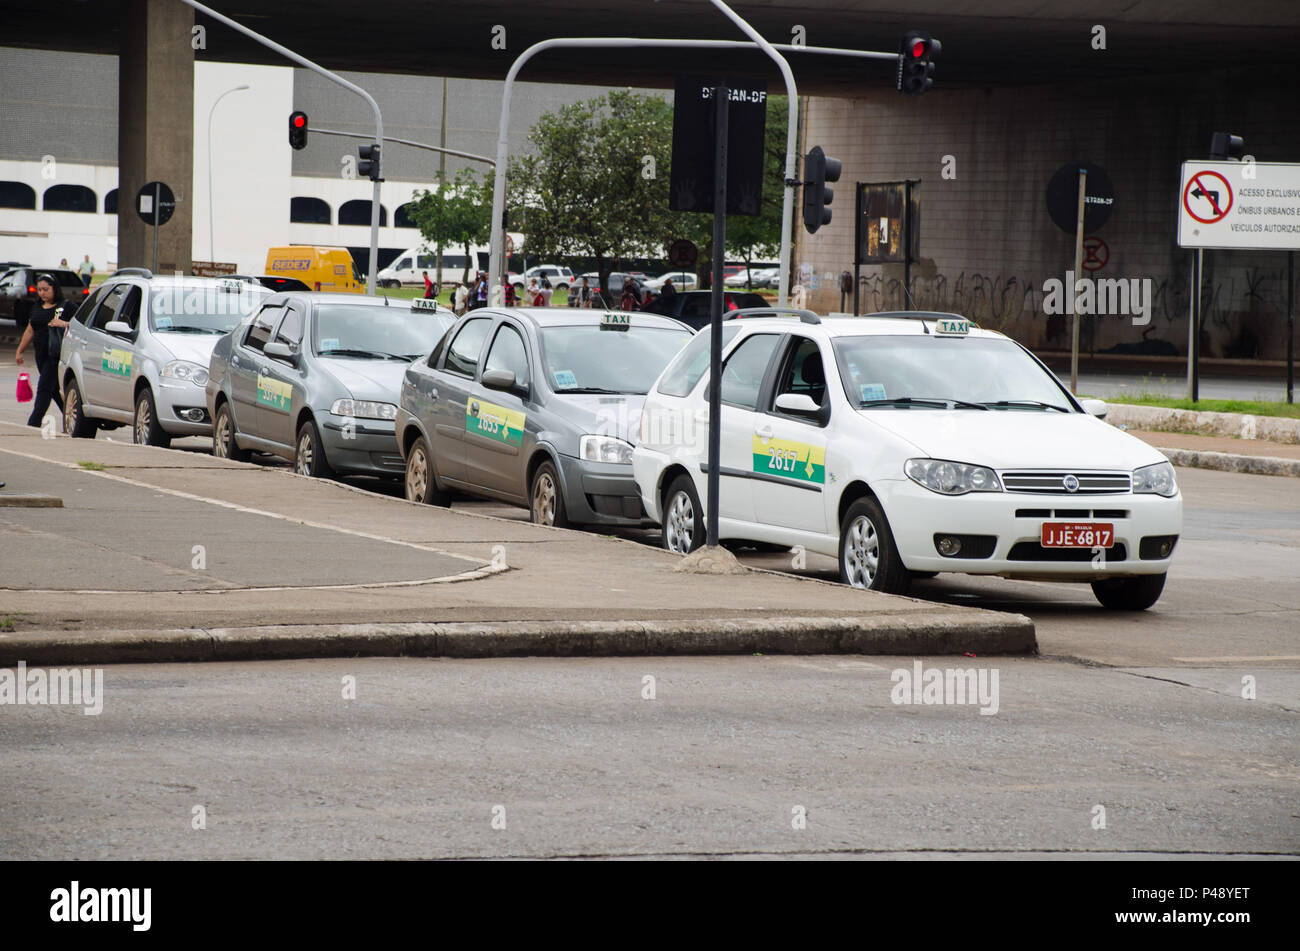 Brasilia DF - 03.02.2012: PONTO DE TÁXI - Ponto de Taxi com veículos estacionados. (Foto: Vanessa Volk / Fotoarena) Foto Stock